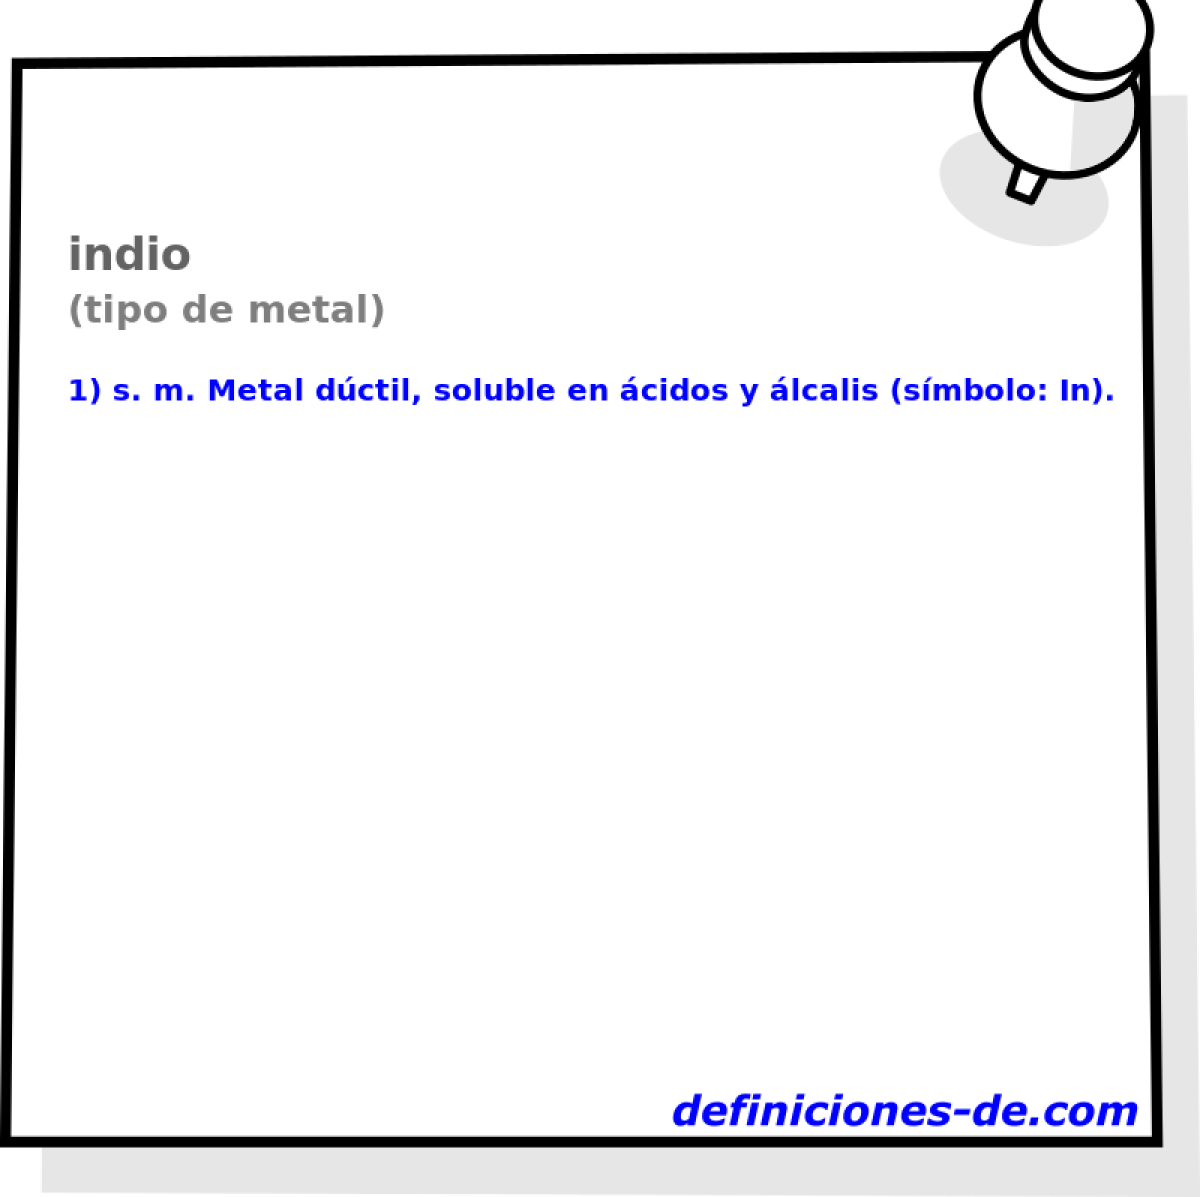 indio (tipo de metal)